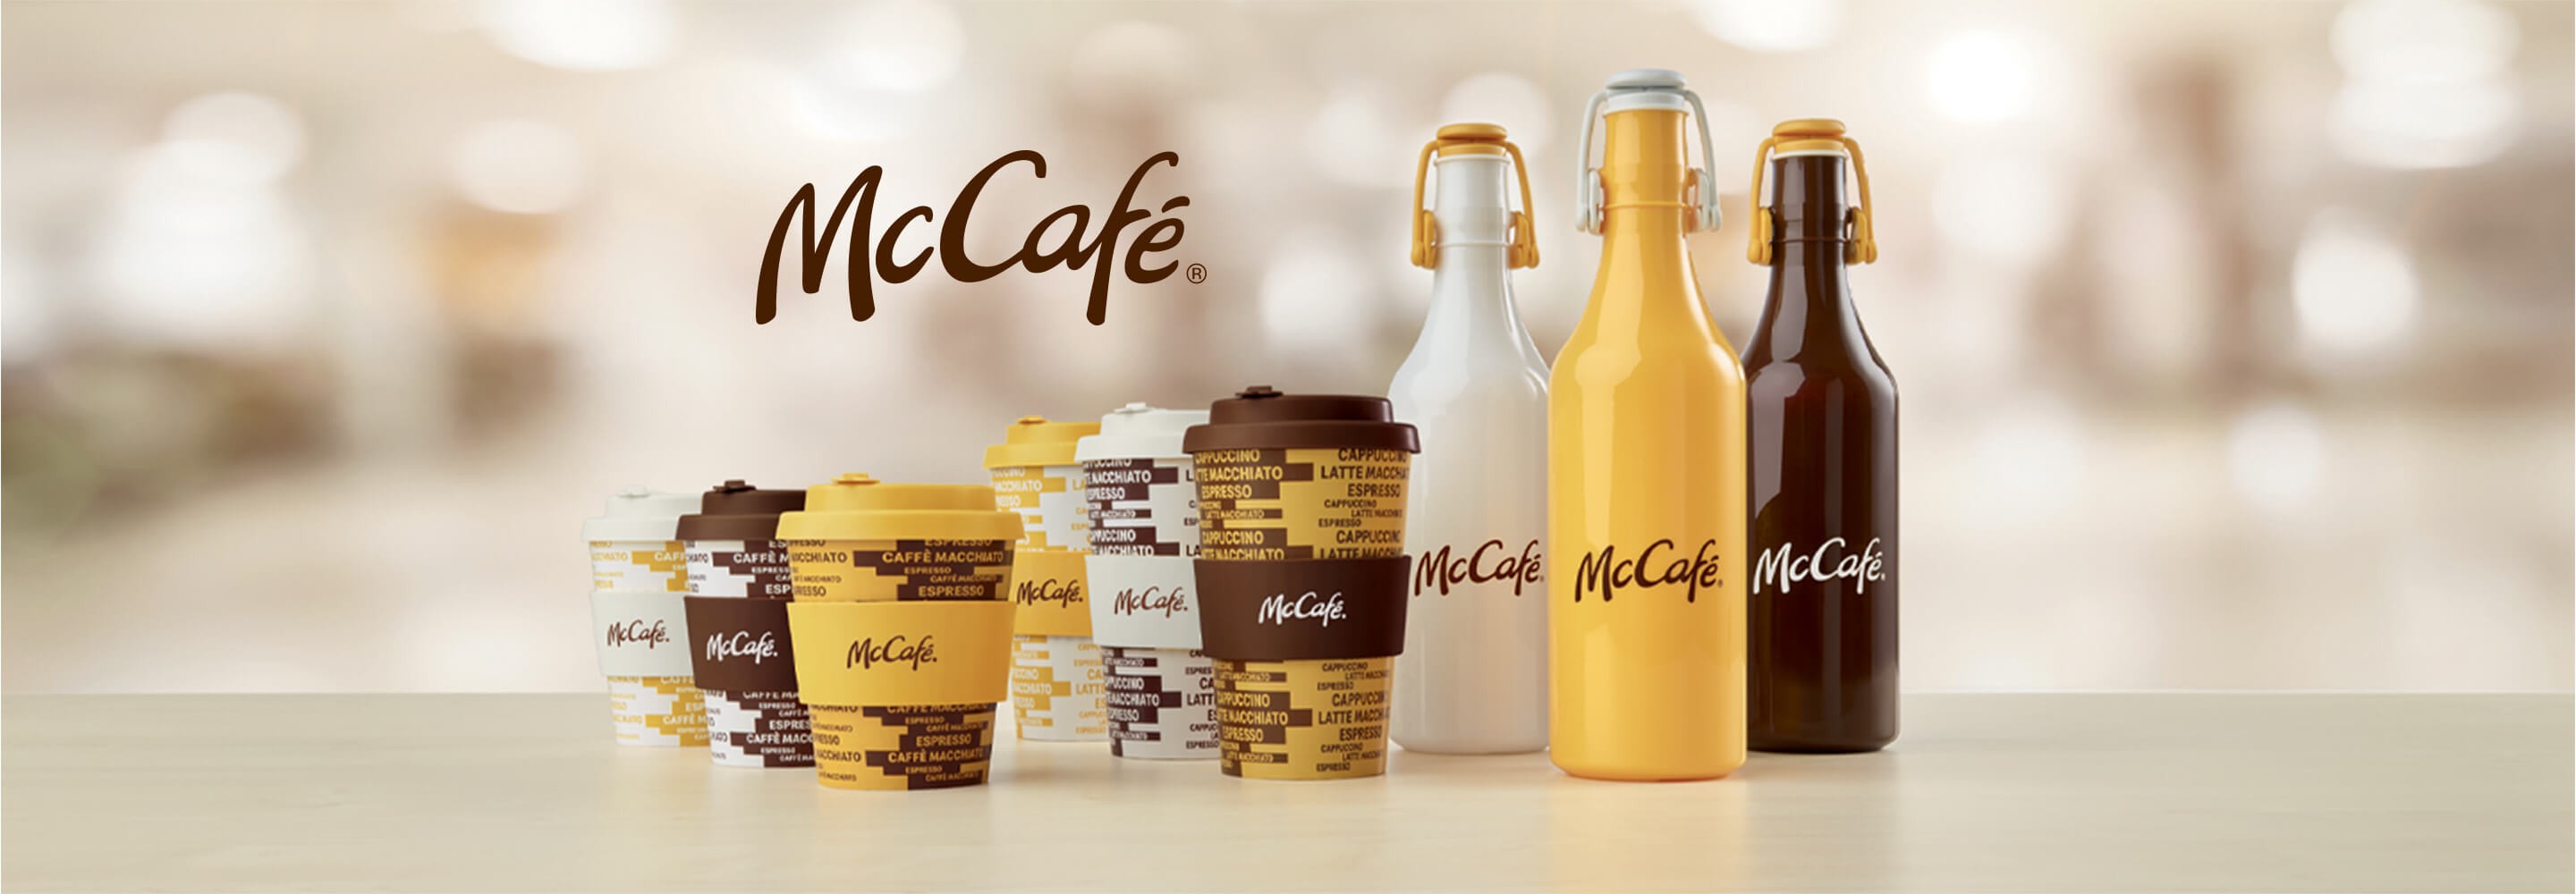 Collezione McCafé